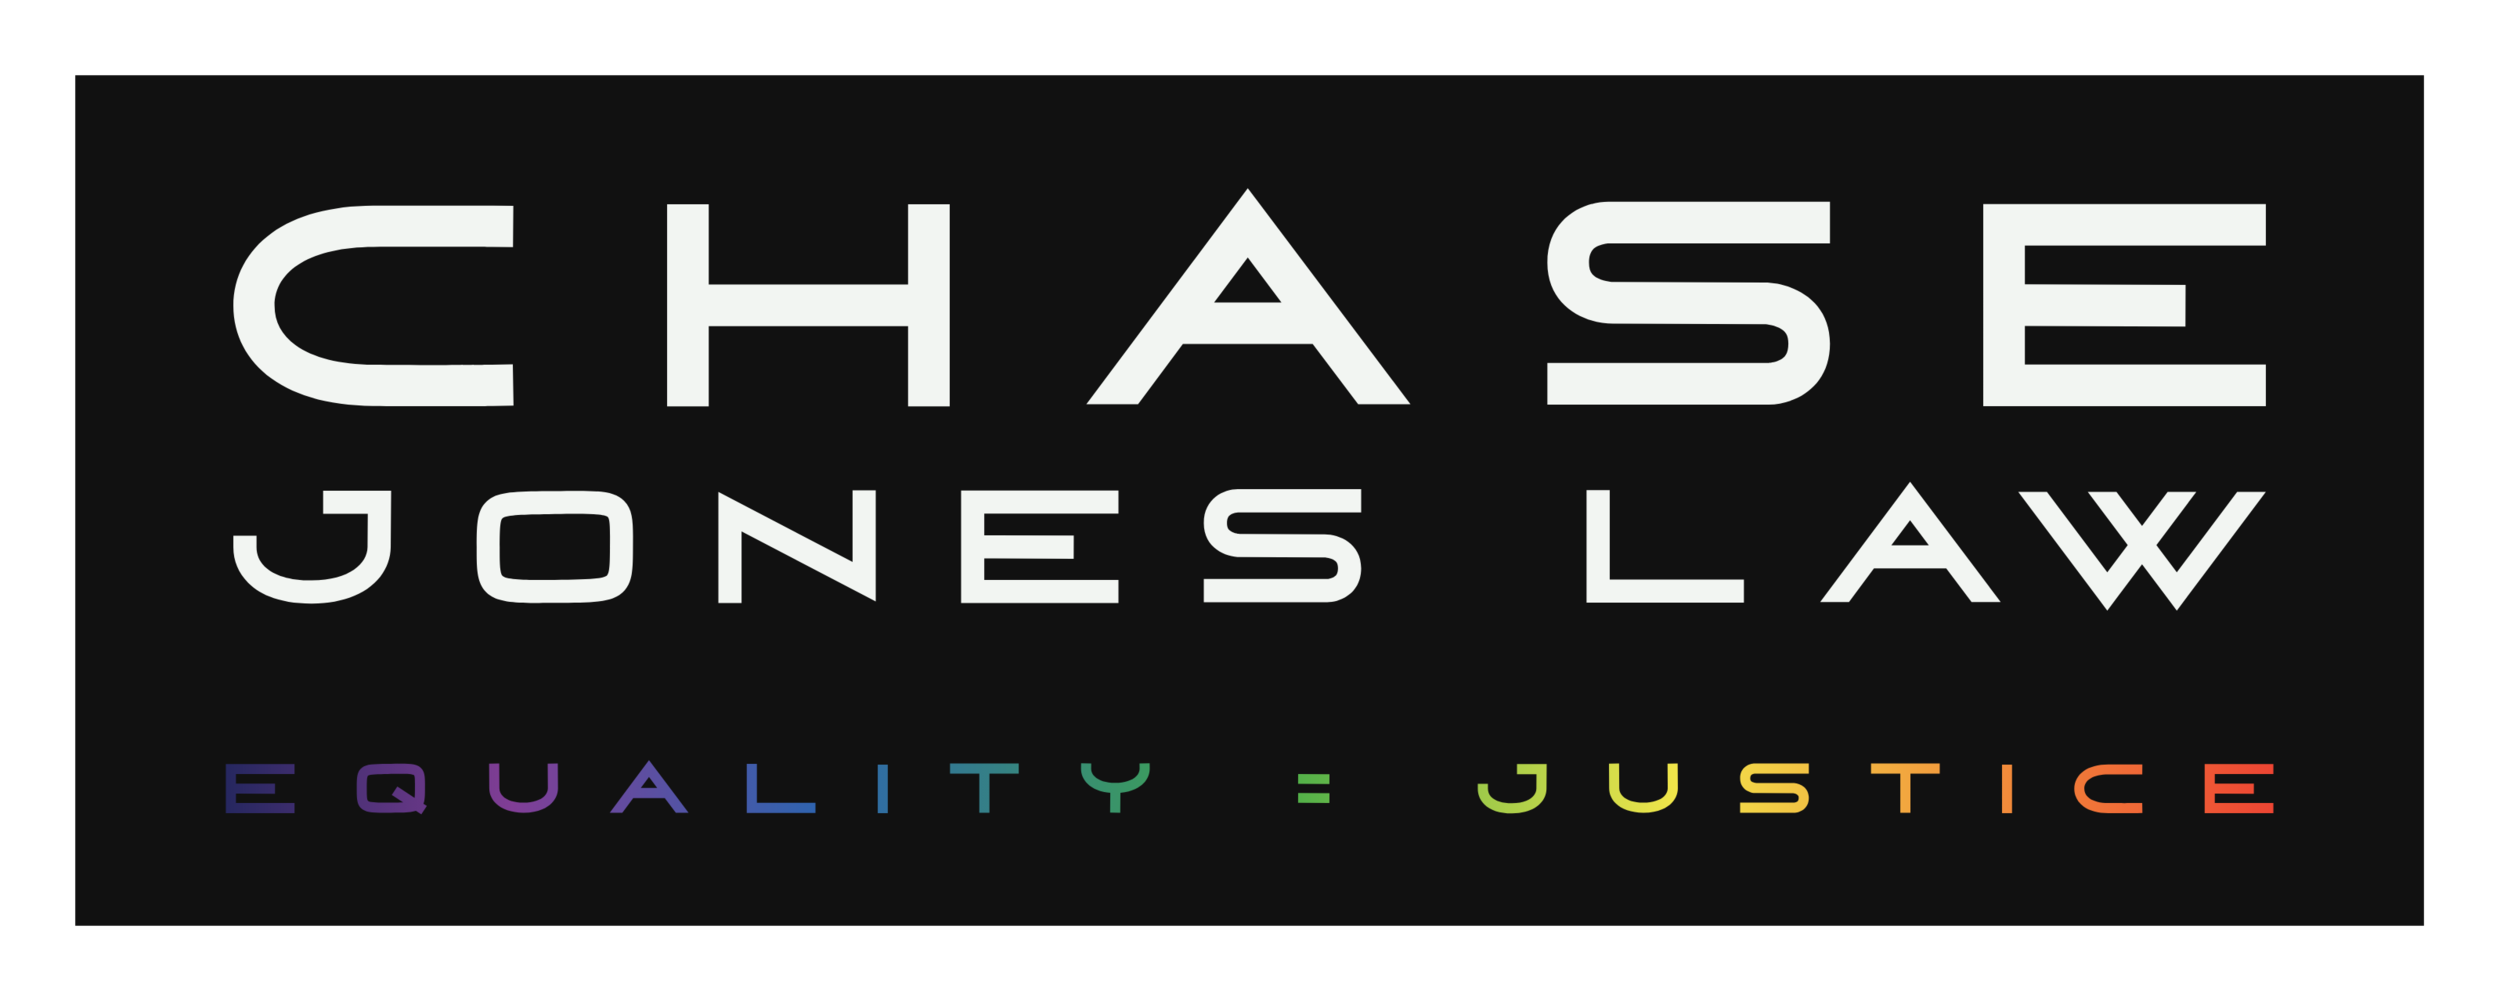 Chase Jones Law